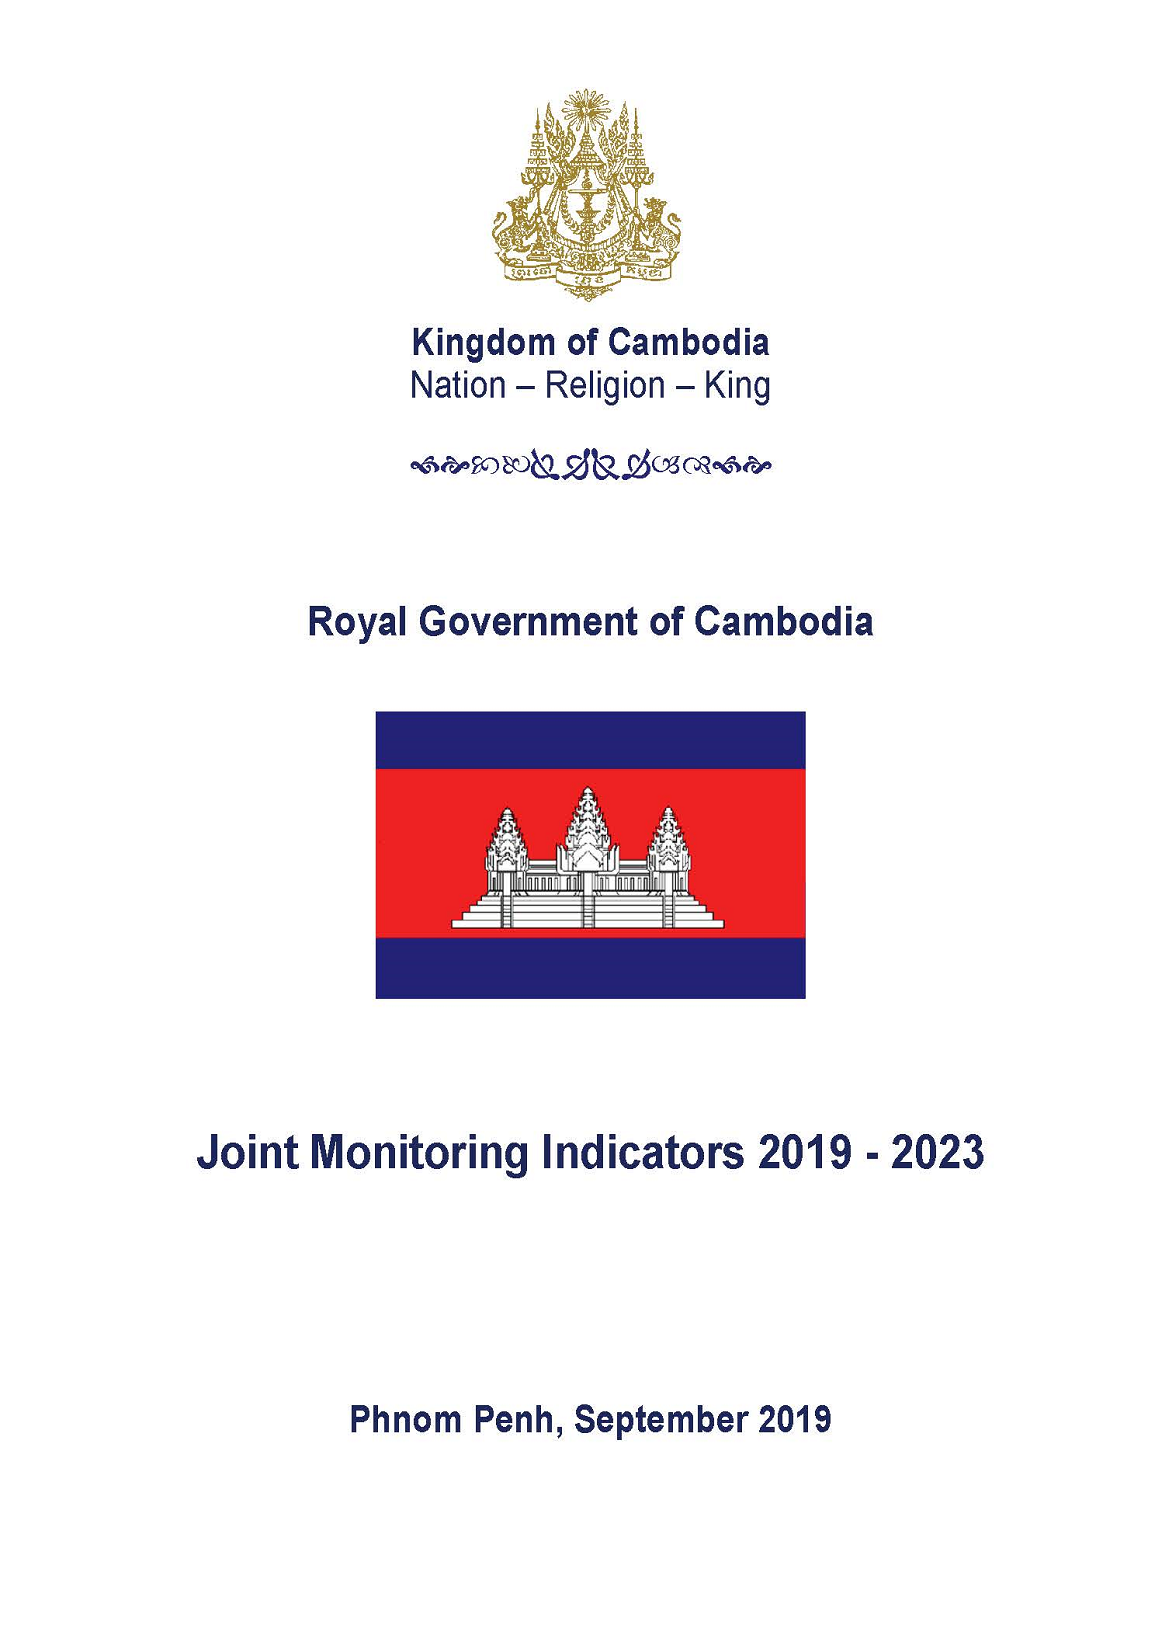 Joint Monitoring Indicators 2019-2023